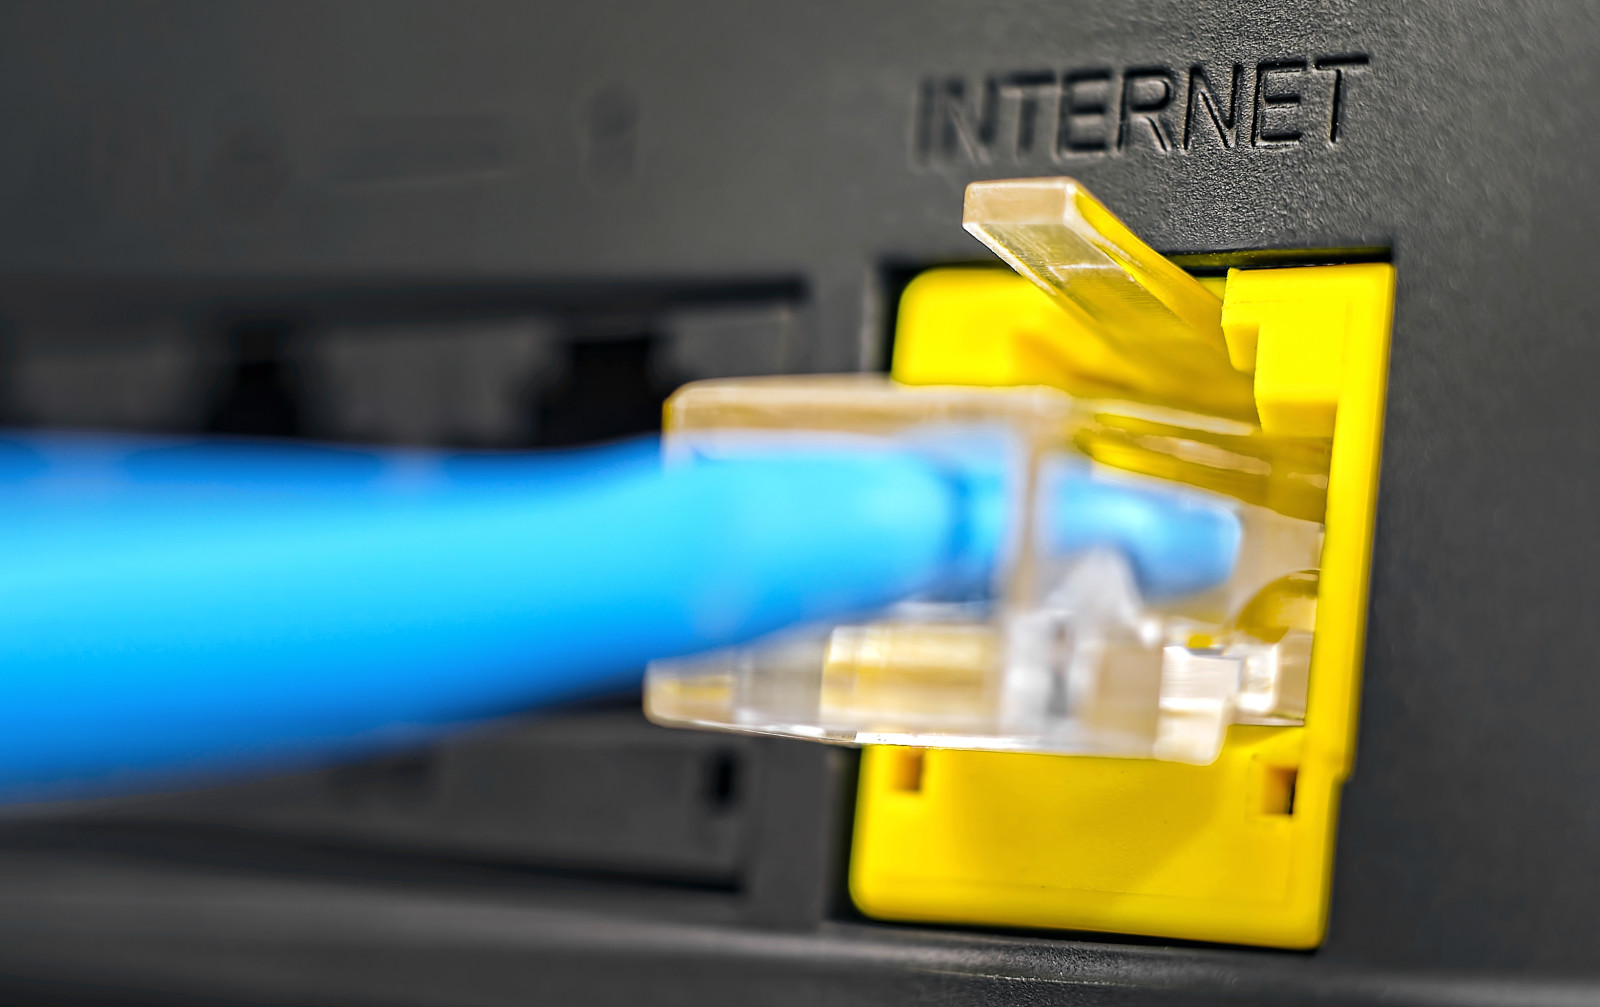 Internet, Kabel, penyambung